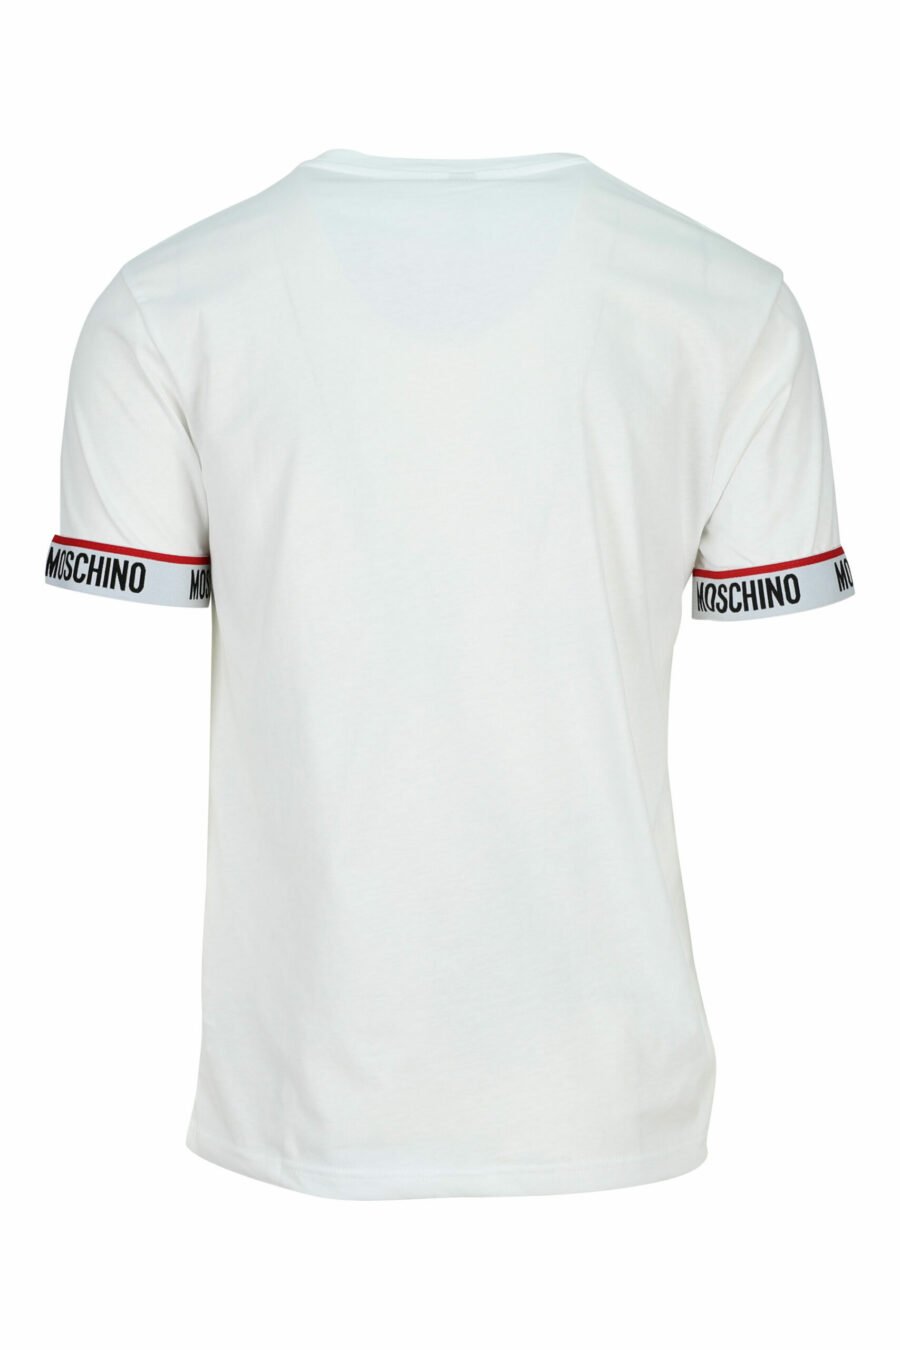 T-shirt blanc avec logo blanc sur les manches - 667113604565 1 à l'échelle